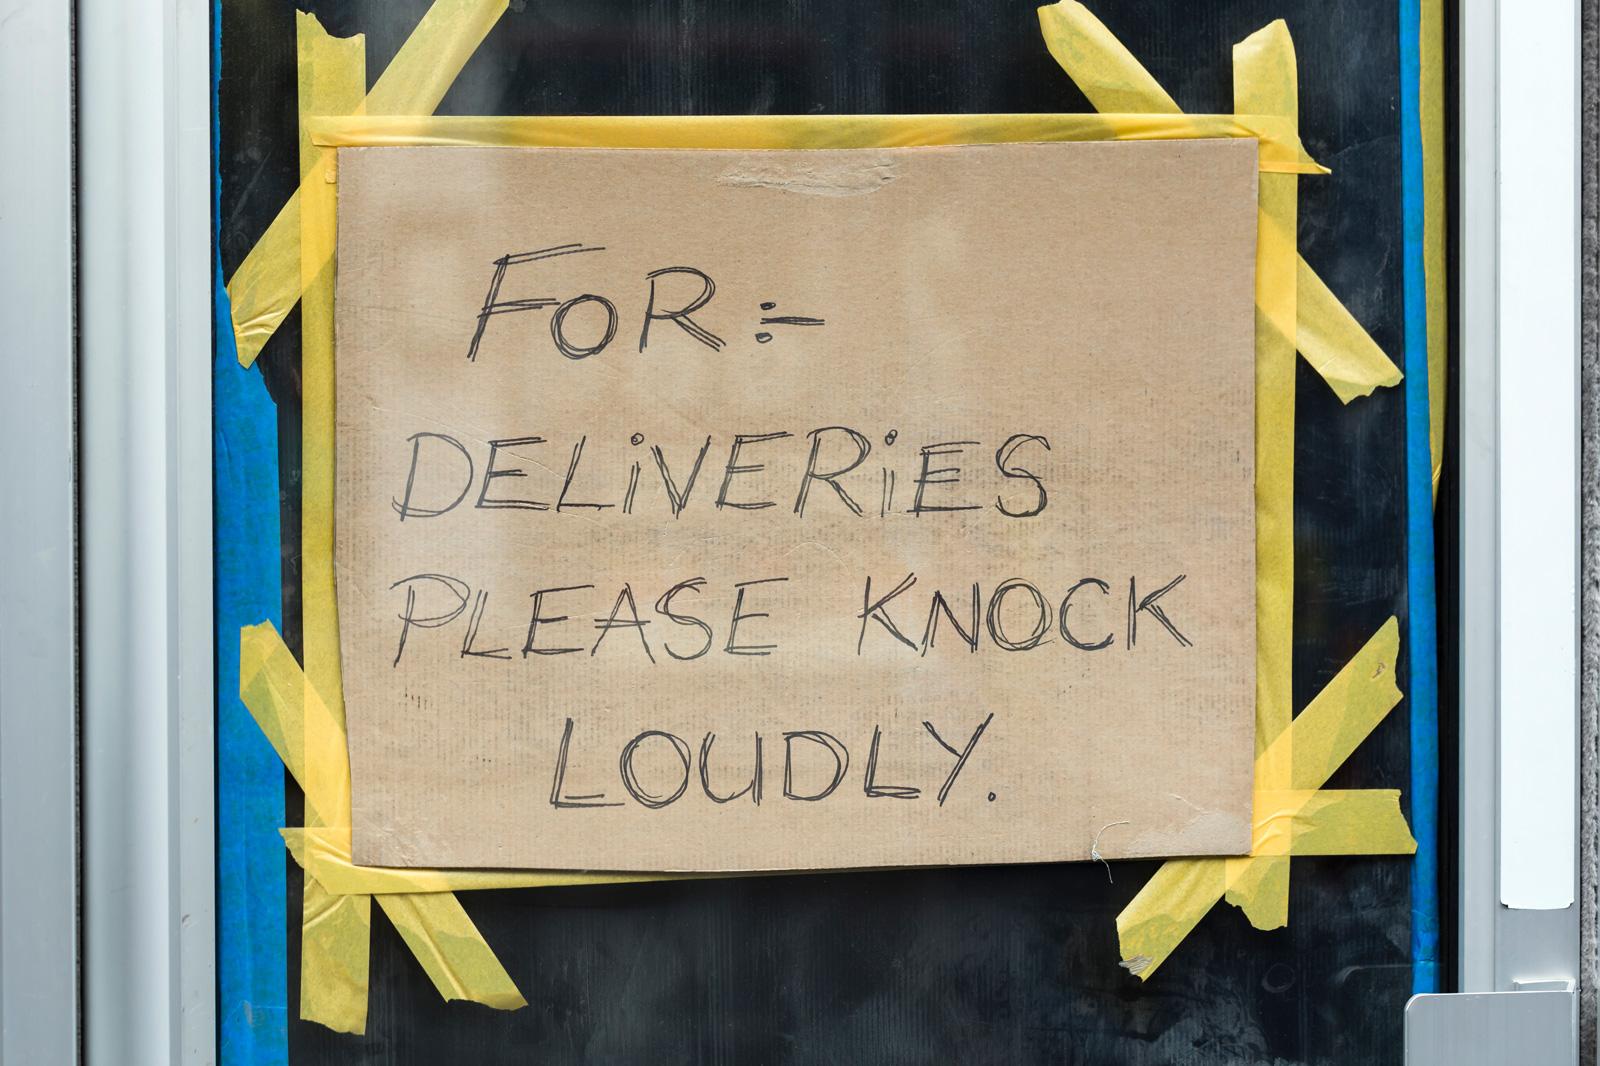 Pappschild an Glastür mit der Aufschrift: For deliveries please knock loudly